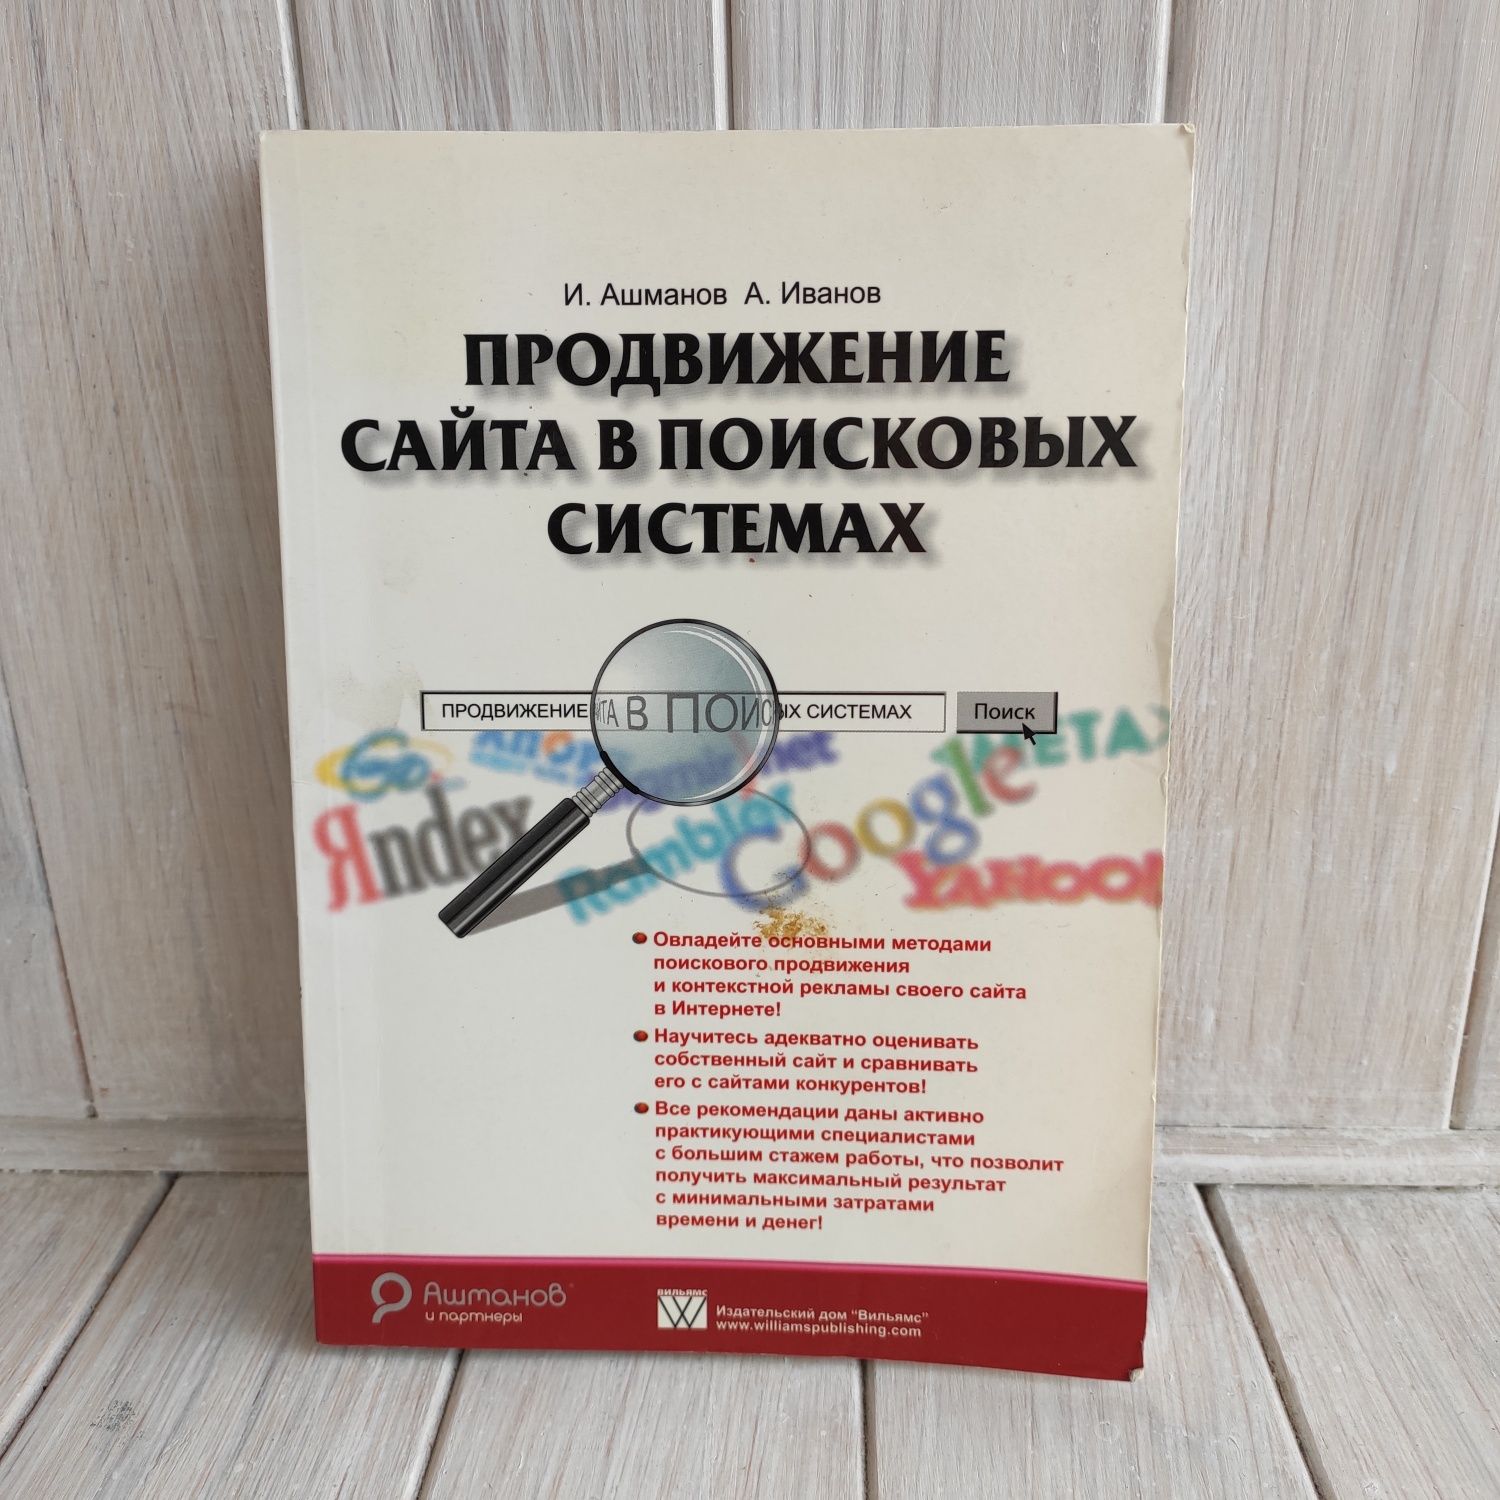 Книги продвижение сайта в поисковых системах православный сайт знакомств для создания семьи славяночка